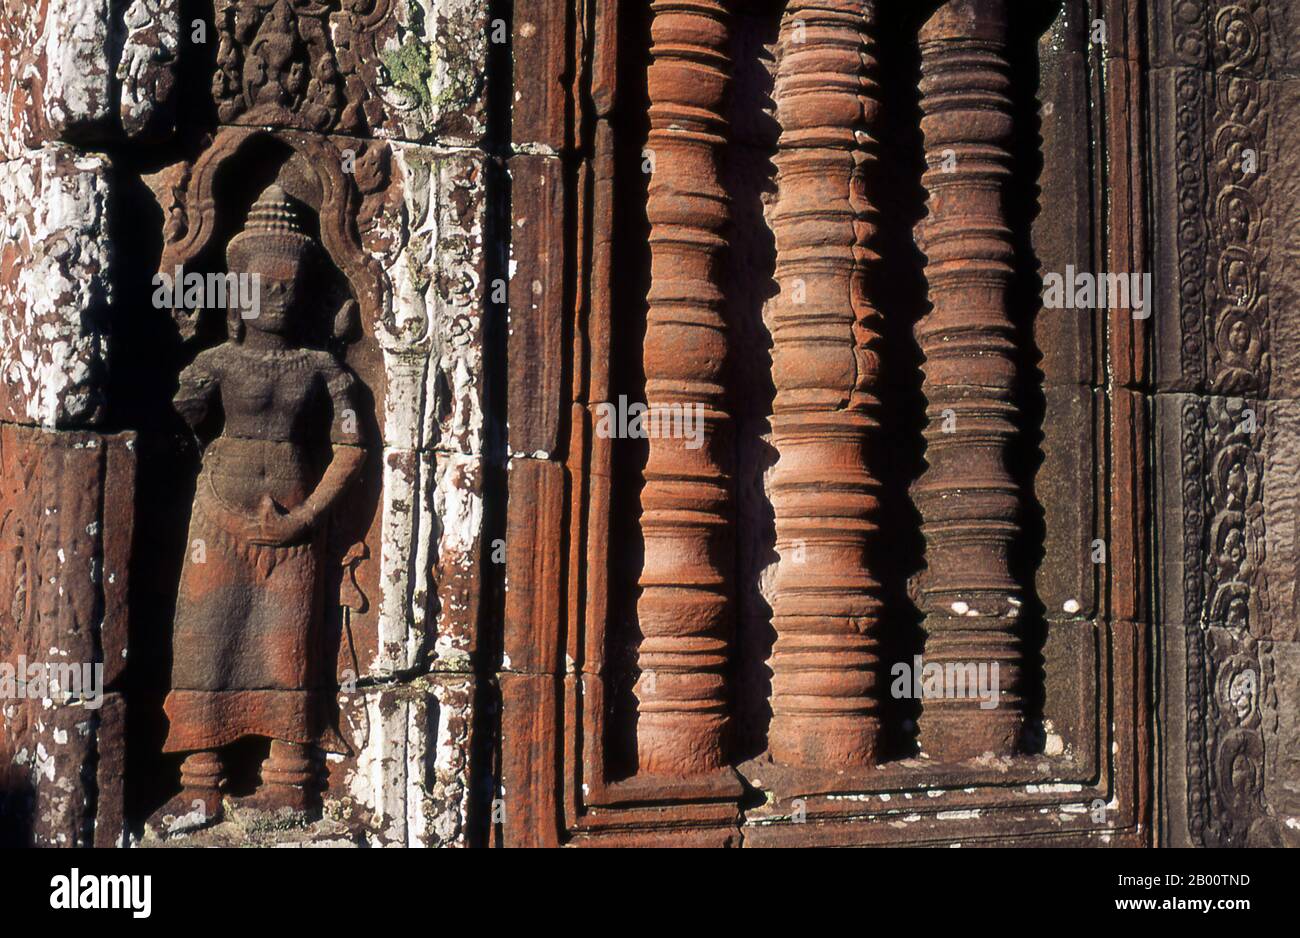 Cambogia: Apsara (ninfa celestiale) e calusters, Preah Khan, Angkor. Preah Khan (Tempio della Spada Sacra) è stato costruito nel tardo 12 ° secolo (1191) da Jayavarman VII e si trova appena a nord di Angkor Thom. Il tempio fu costruito sul luogo della vittoria di Jayavarman VII sui Cham invasori nel 1191. Era il centro di un'organizzazione consistente, con quasi 100,000 funzionari e funzionari. Fu un'università buddista alla volta. La divinità primaria del tempio è il boddhisatva Avalokiteshvara sotto forma di padre di Jayavarman. Foto Stock